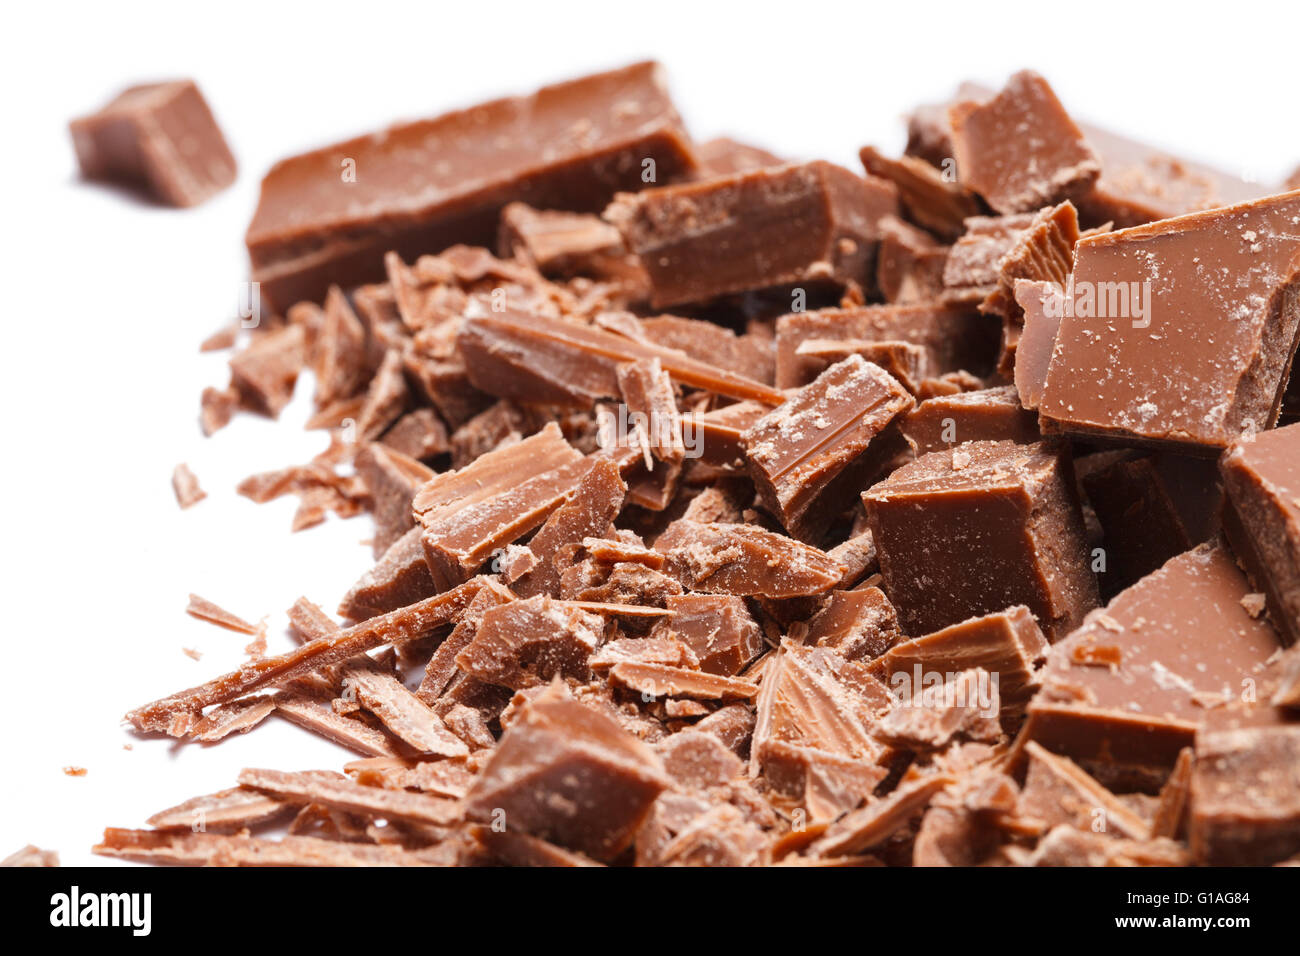 Stapel gebrochen und rasierte Schokoladenstücke, Isolated on White Background. Stockfoto